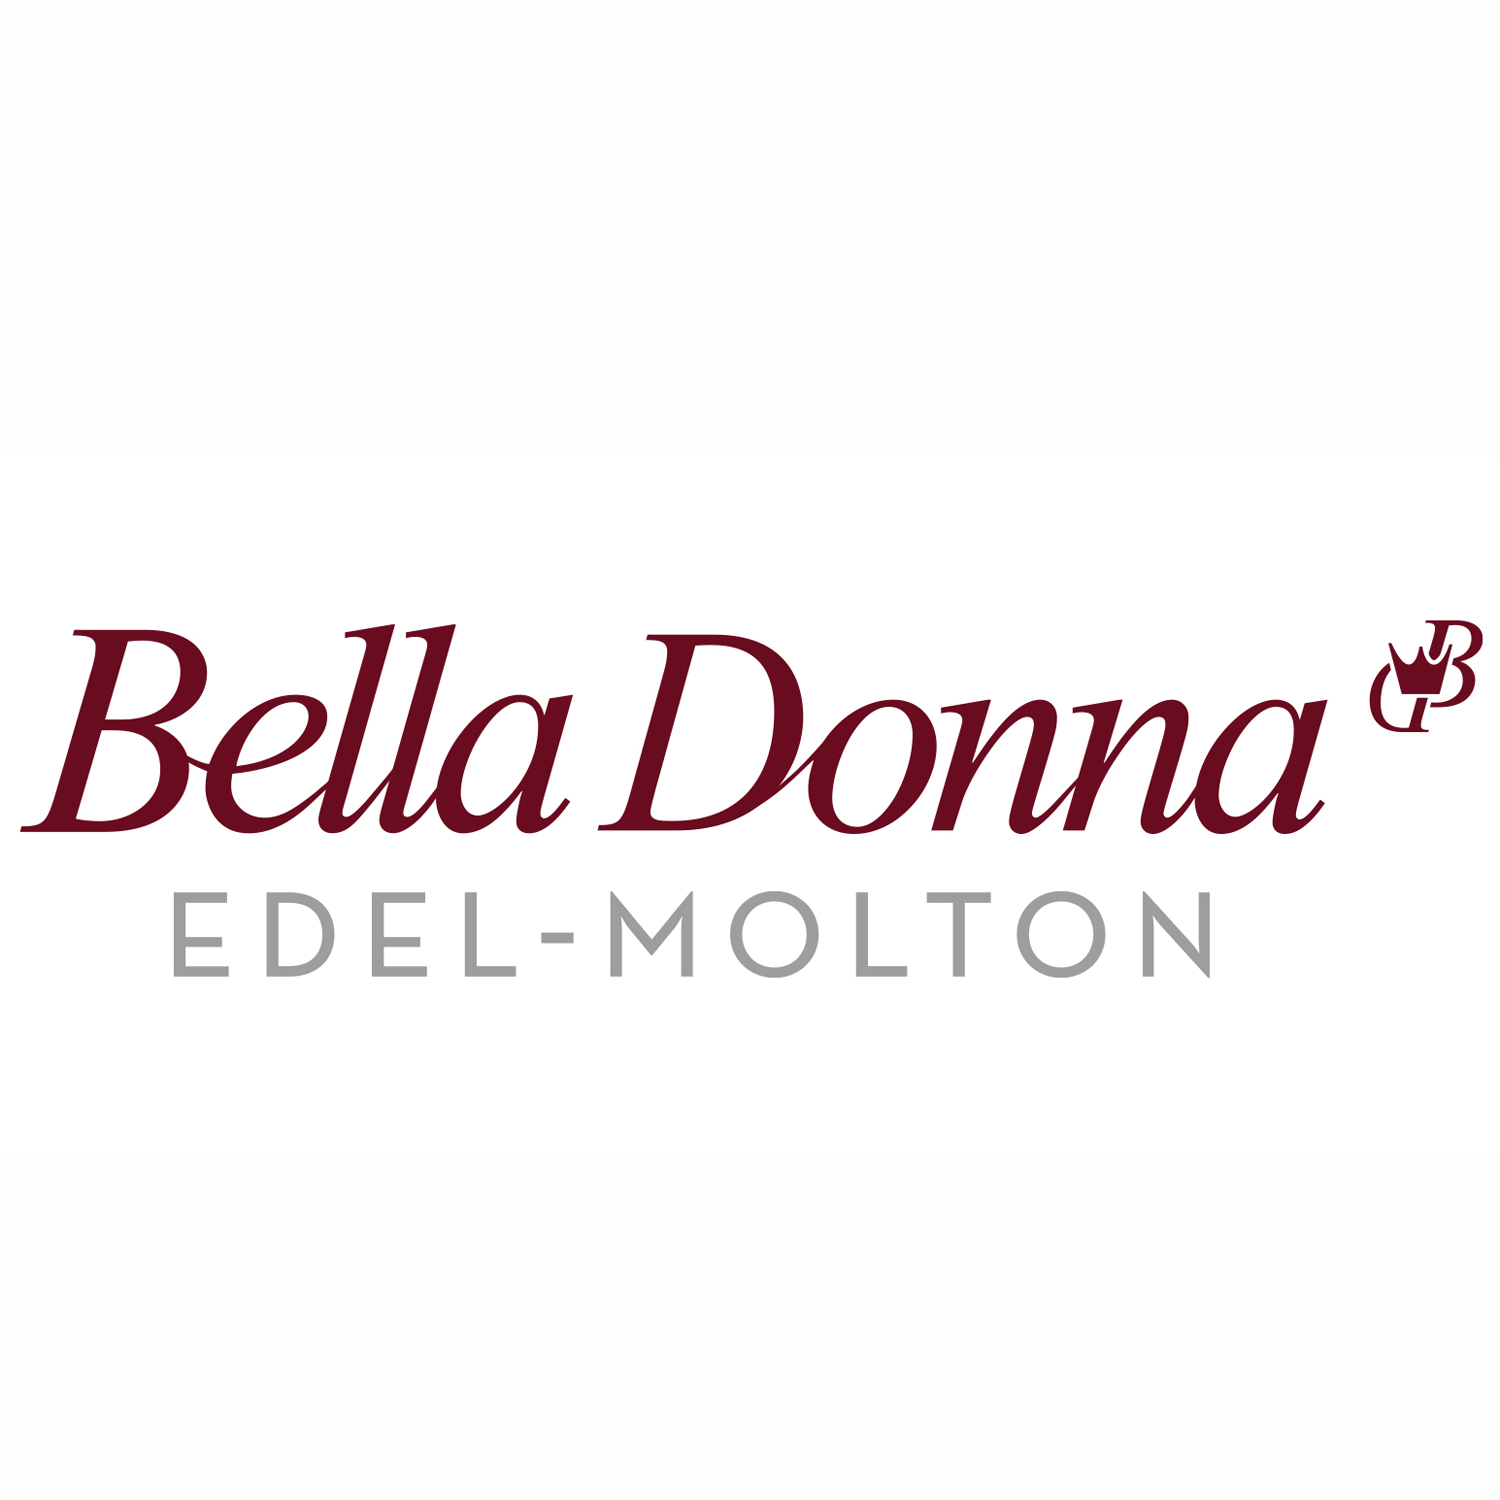 FORMESSE Matratzenschoner Bella Donna Edel Molton weiß 140x200-160x220cm